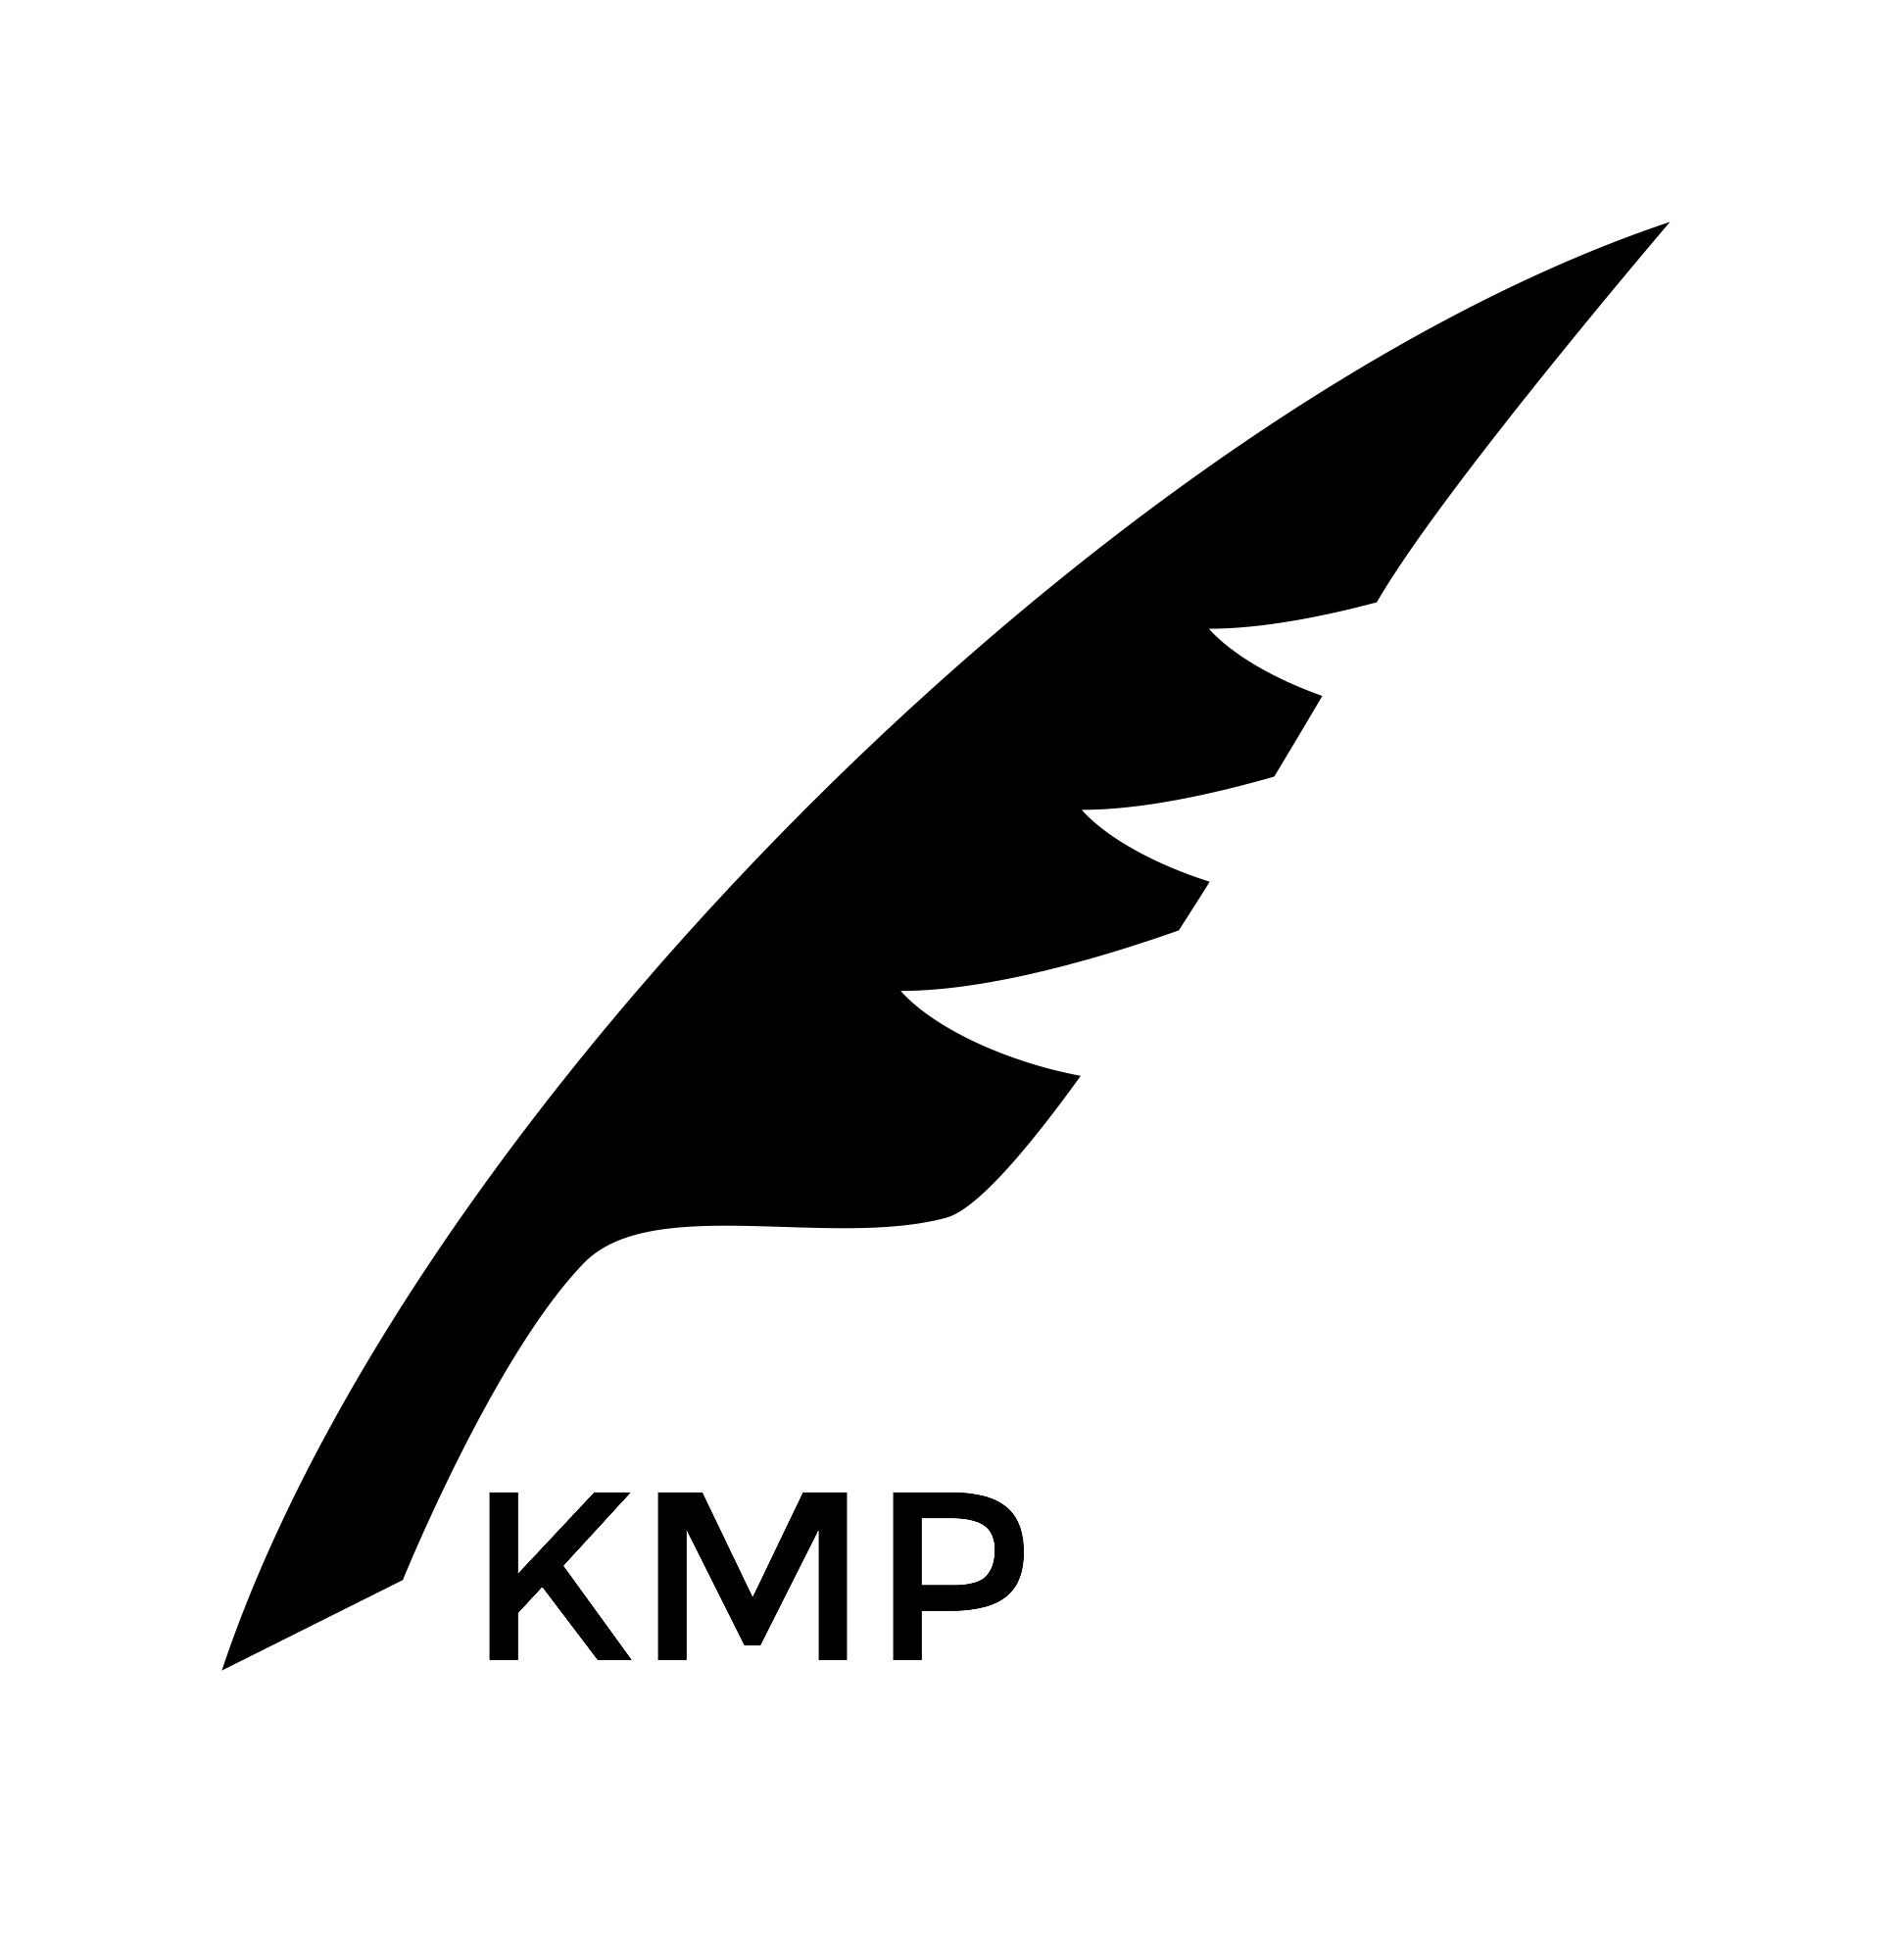 K. M. P.